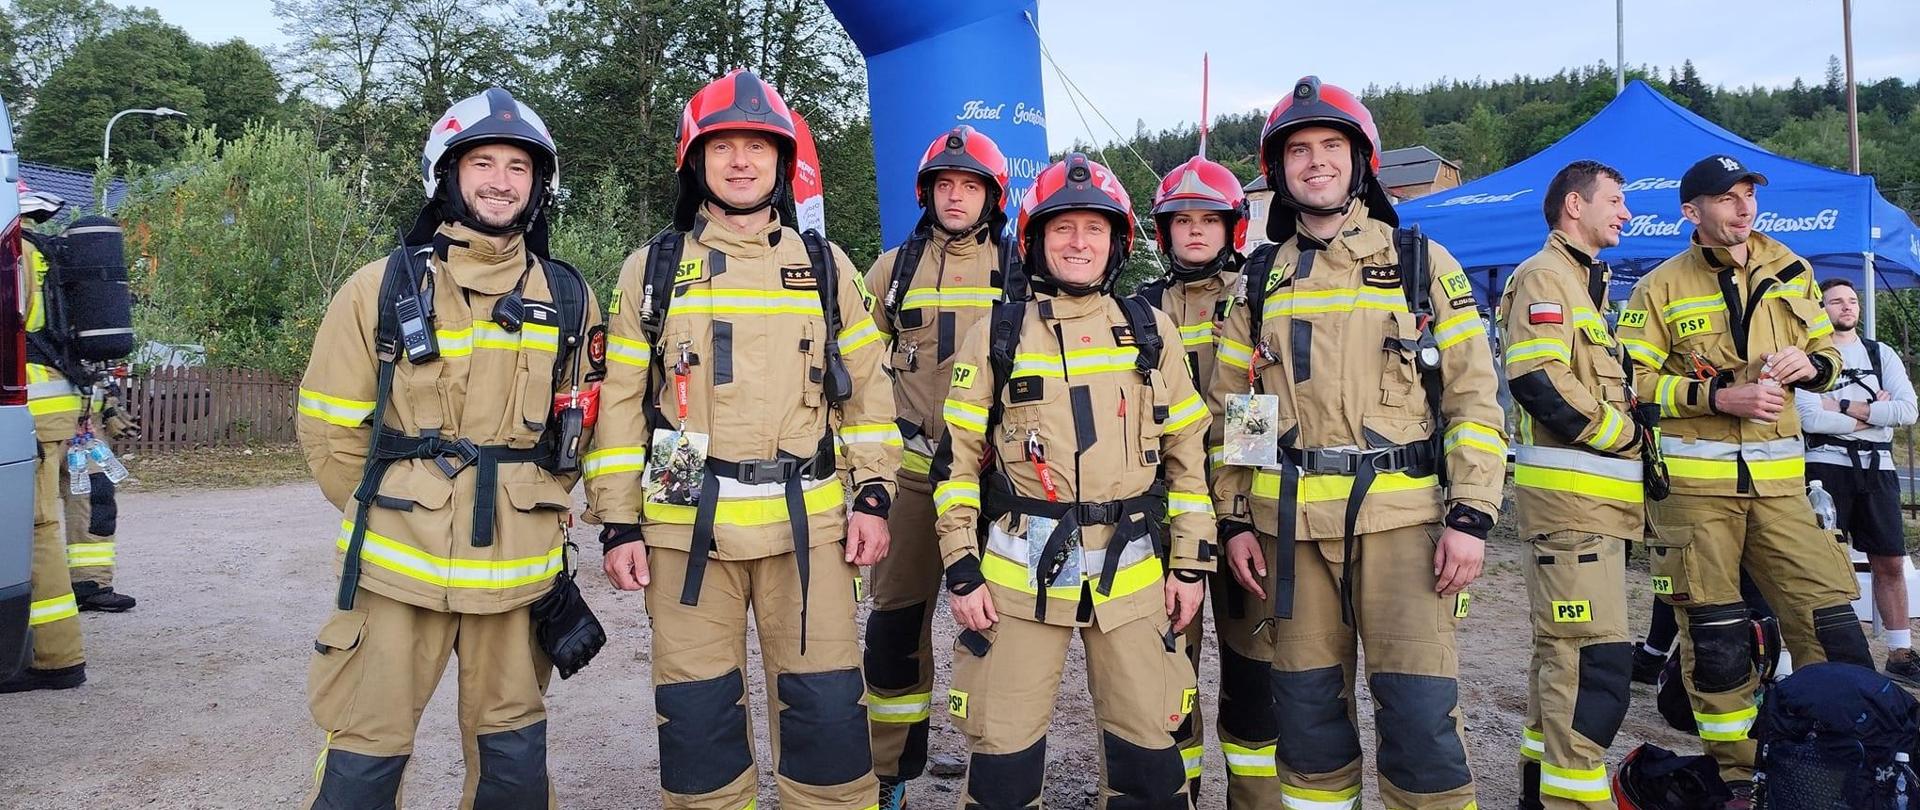 Na zdjęciu zostali uchwyceni strażacy z KM PSP Jelenia Góra, ubrani w ubranie specjalne gotowi do wymarszu w góry.